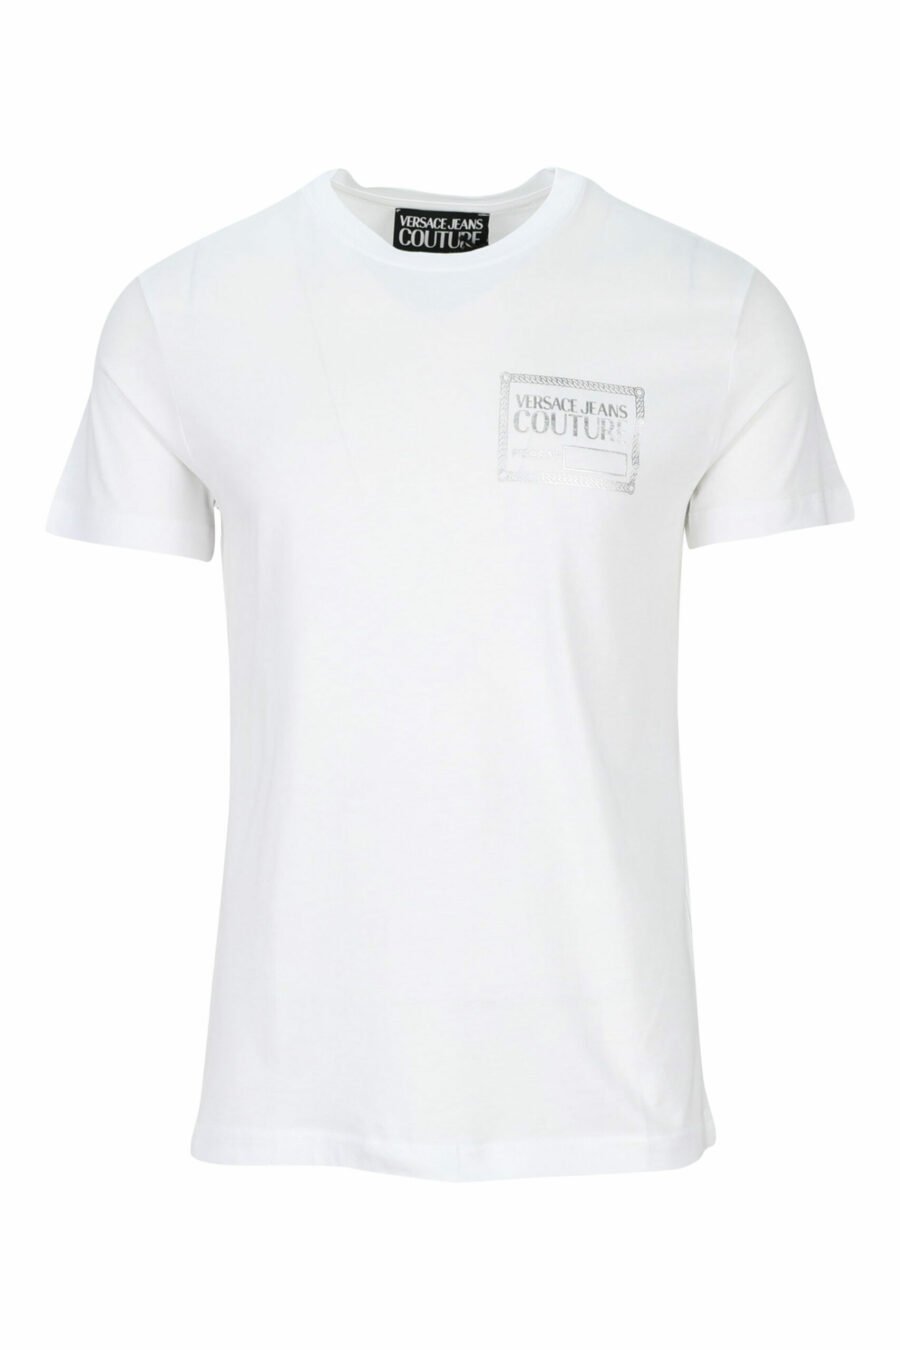 T-shirt blanc avec minilogue argenté "piece number" - 8052019456936 scaled